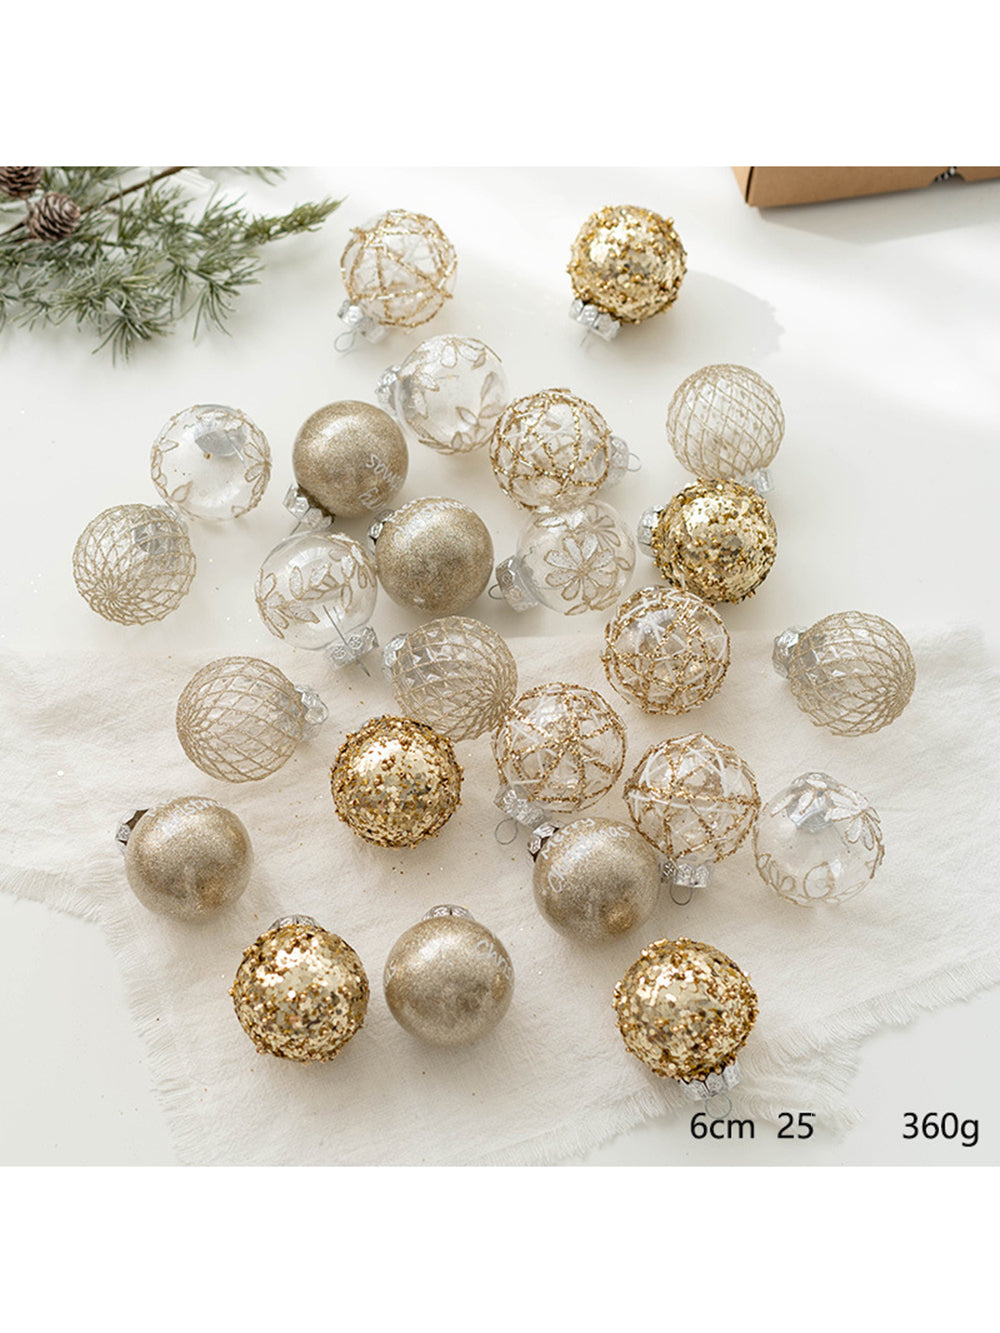 25 unidades de bolas pintadas de Natal decoração de janela de árvore de Natal